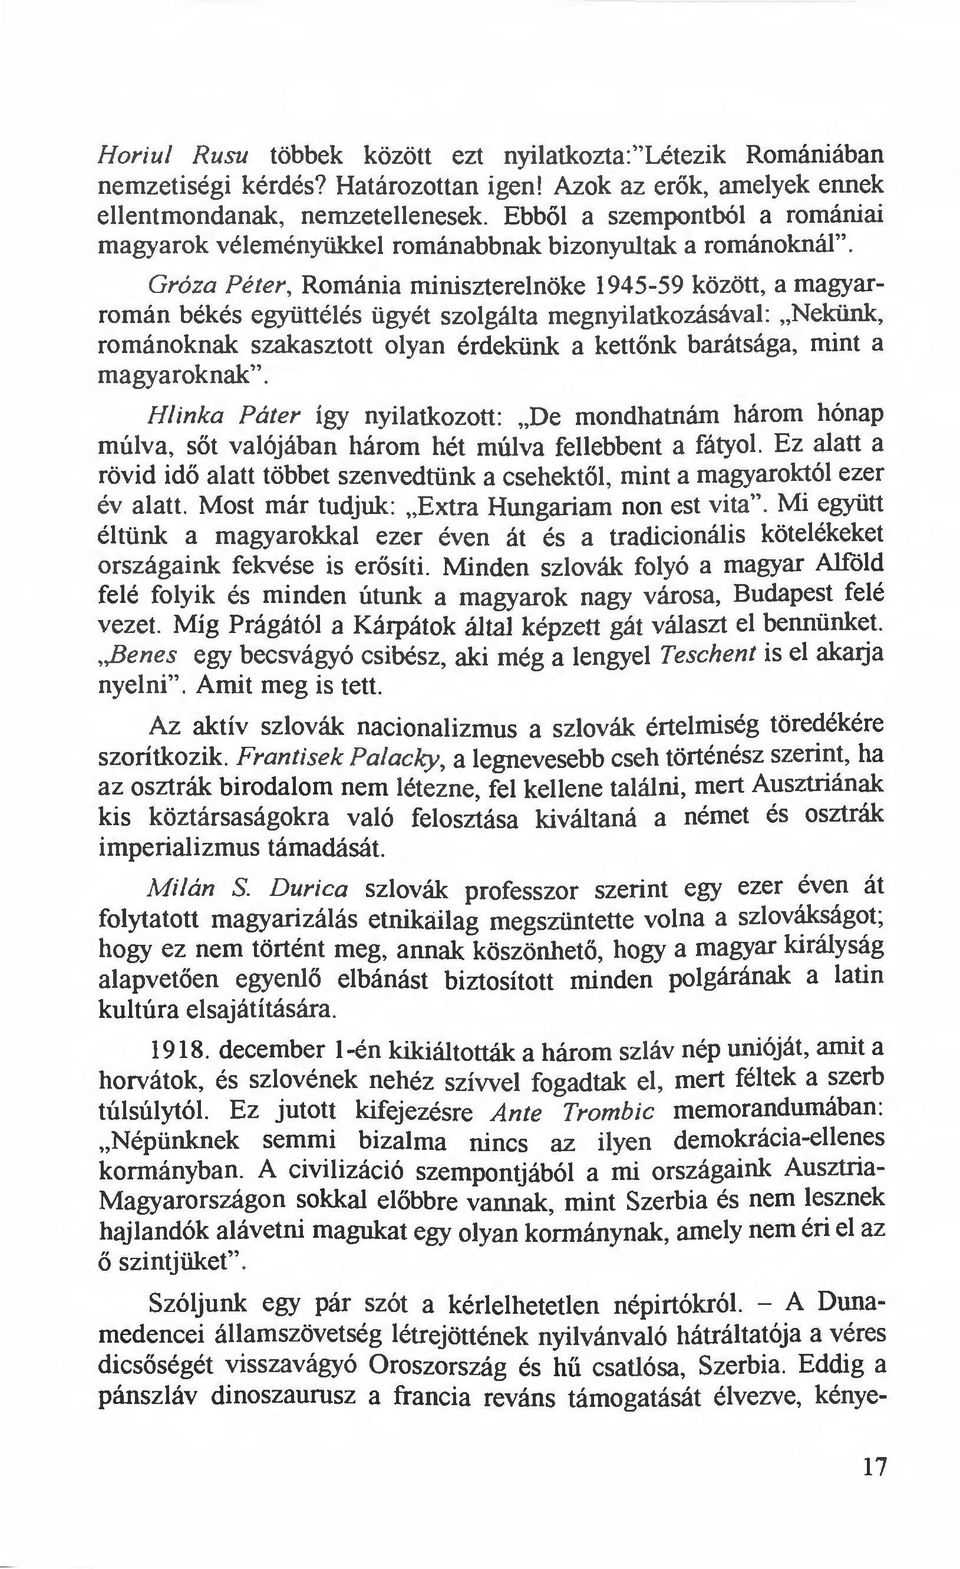 Románia miniszterelnöke 1945-59 között, a magyarromán békés együttélés ügyét szolgálta megnyilatkozásával: "Nekünk, románoknak szakasztott olyan érdekünk a kettőnk barátsága, mint a magyaroknak".